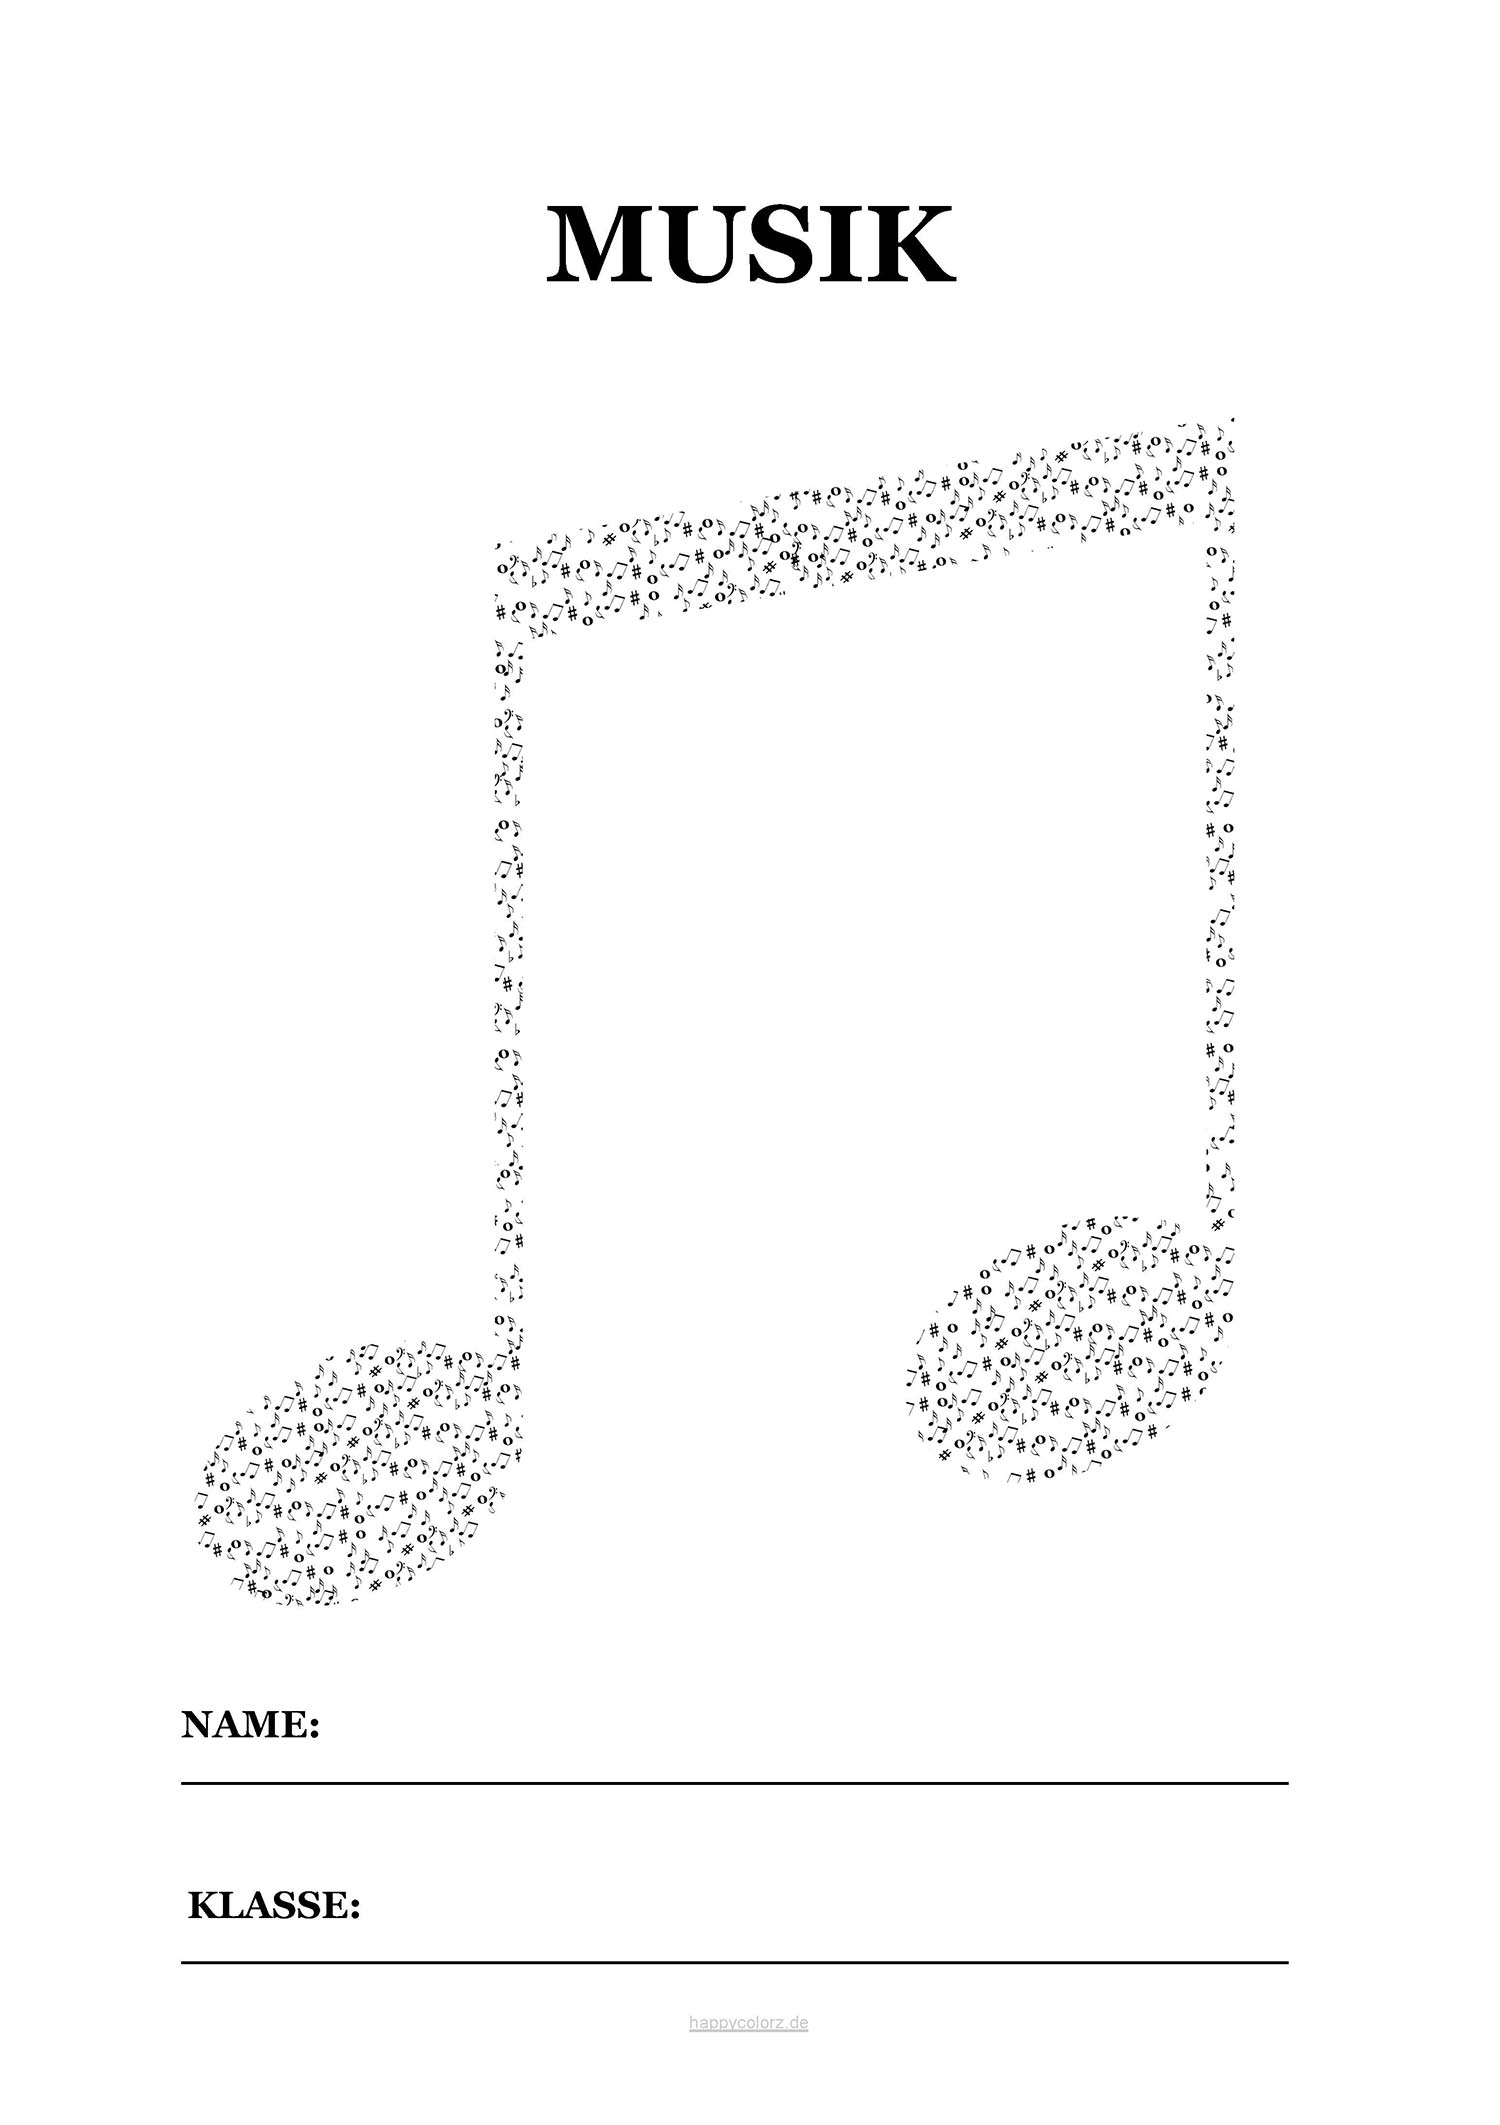 Musik Deckblatt mit Noten zum kostenlosen ausdrucken (pdf)